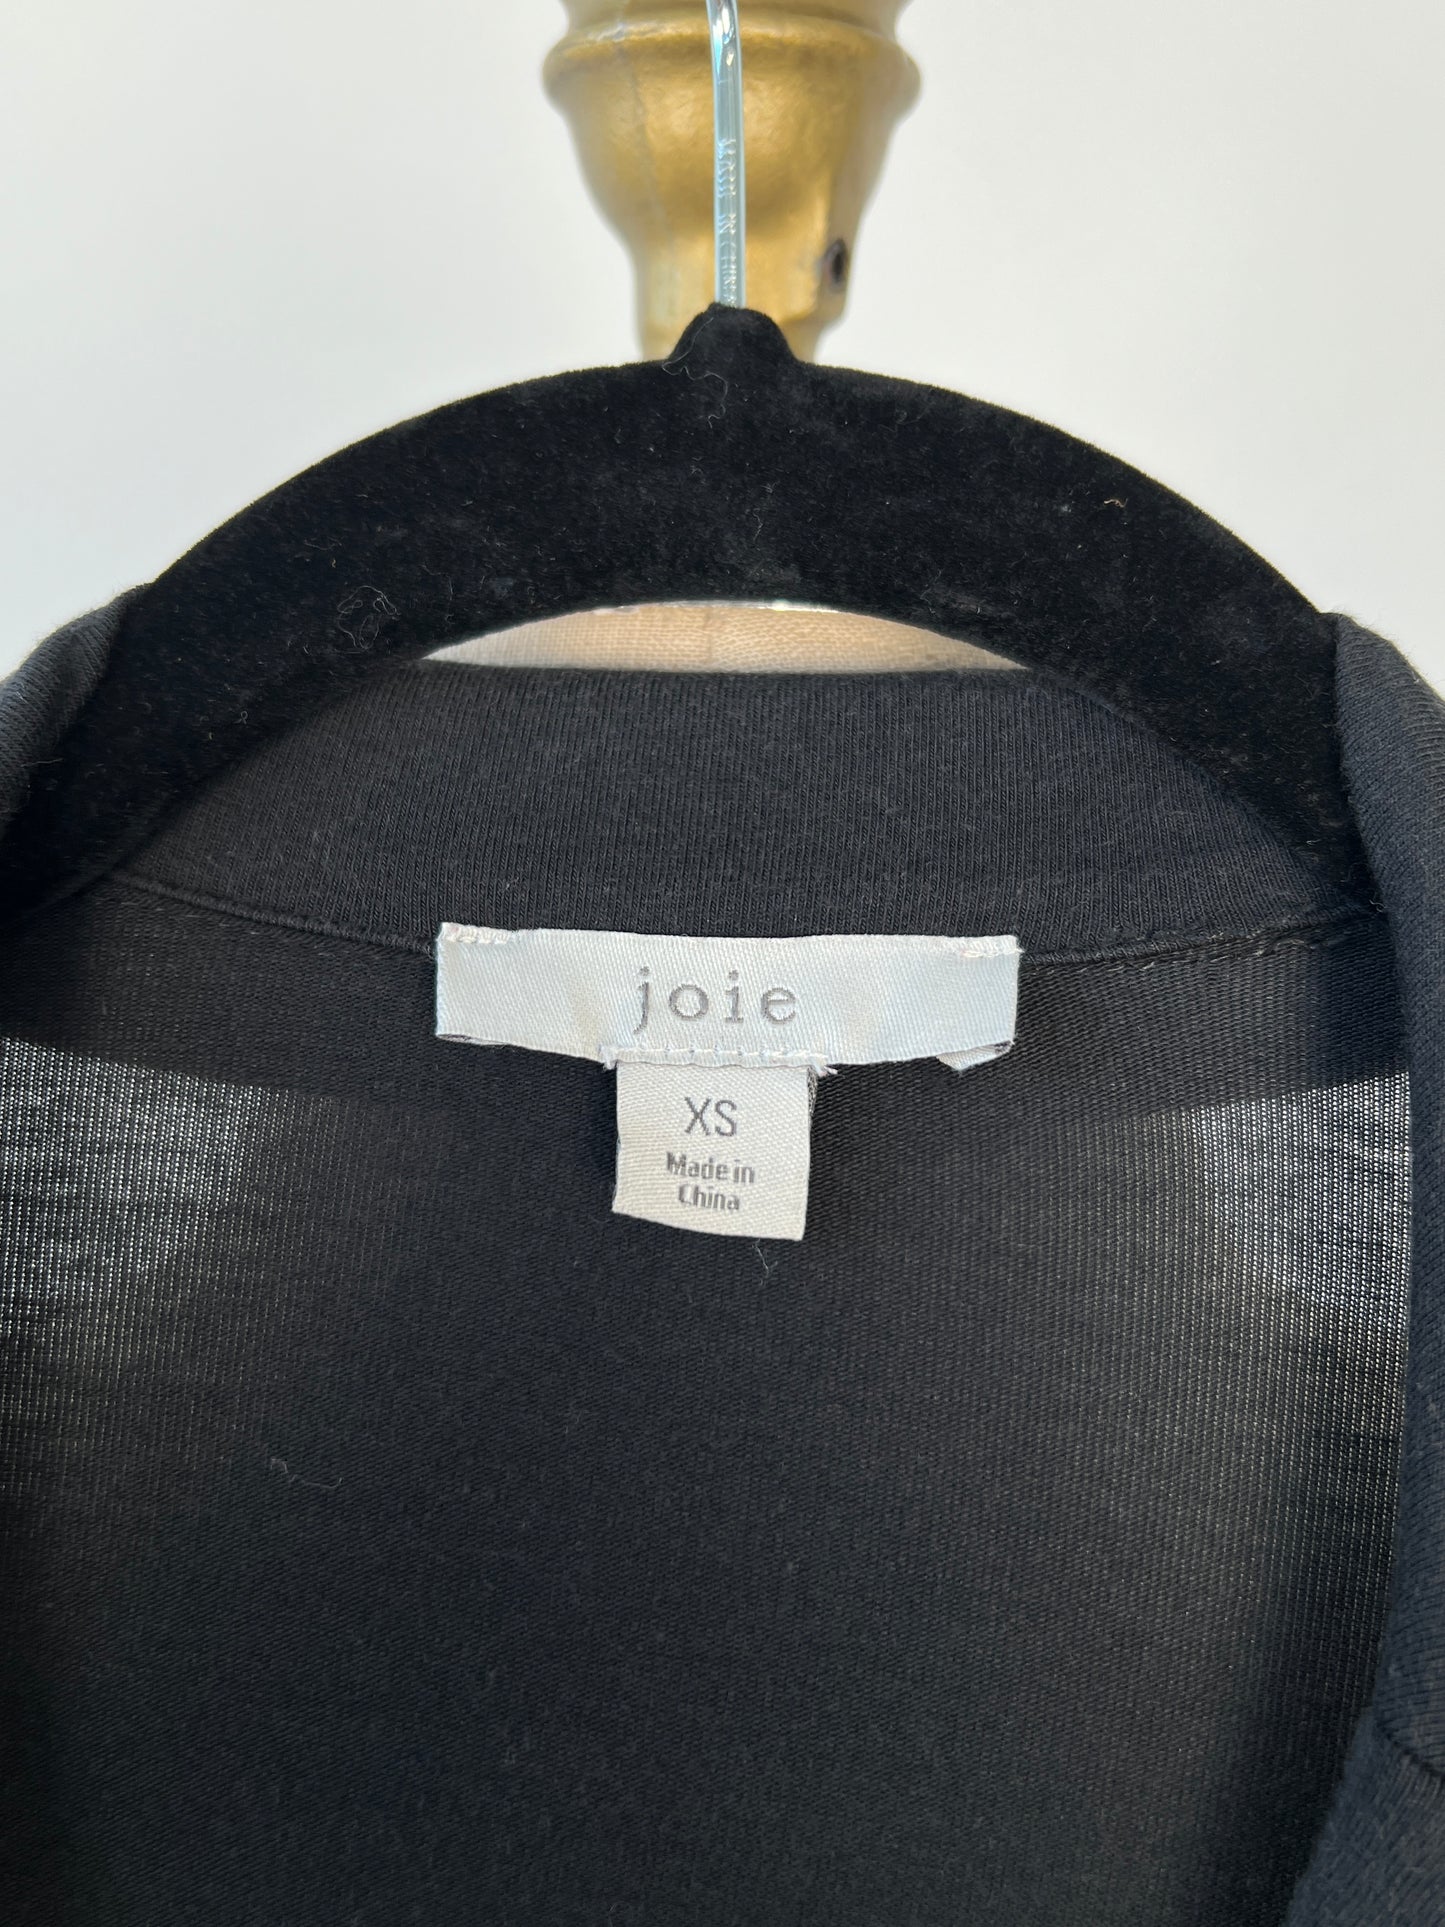 Jumpsuit confort noir lavable (XS)